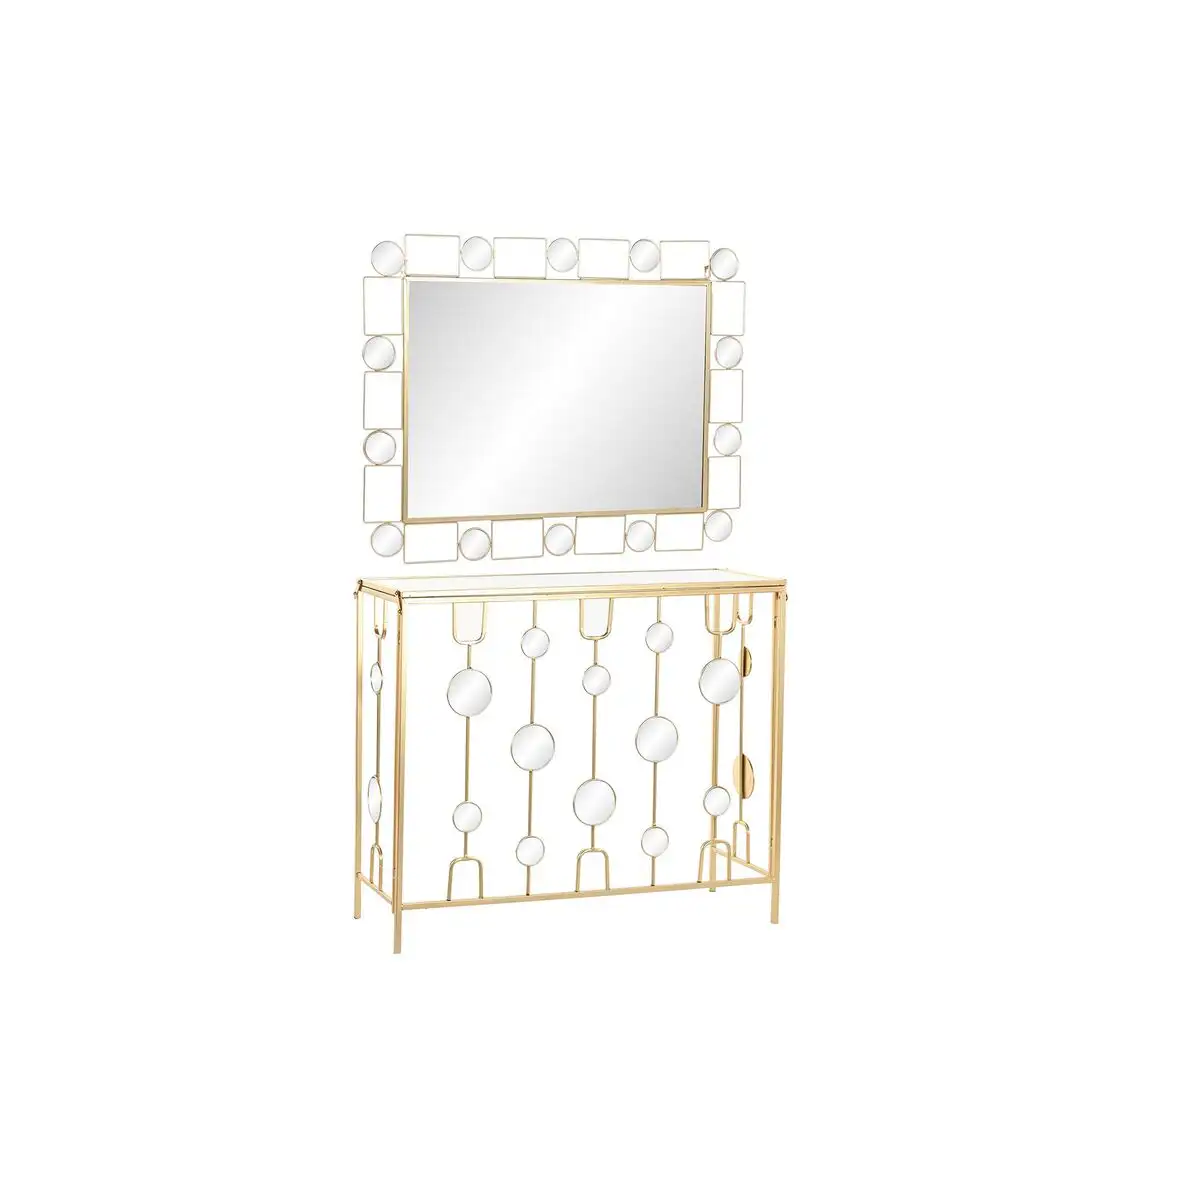 Console dkd home decor miroir dore metal 92 x 32 x 78 cm _3225. Entrez dans l'Univers de DIAYTAR SENEGAL - Où Choisir est un Plaisir. Explorez notre gamme variée et trouvez des articles qui parlent à votre cœur et à votre style.